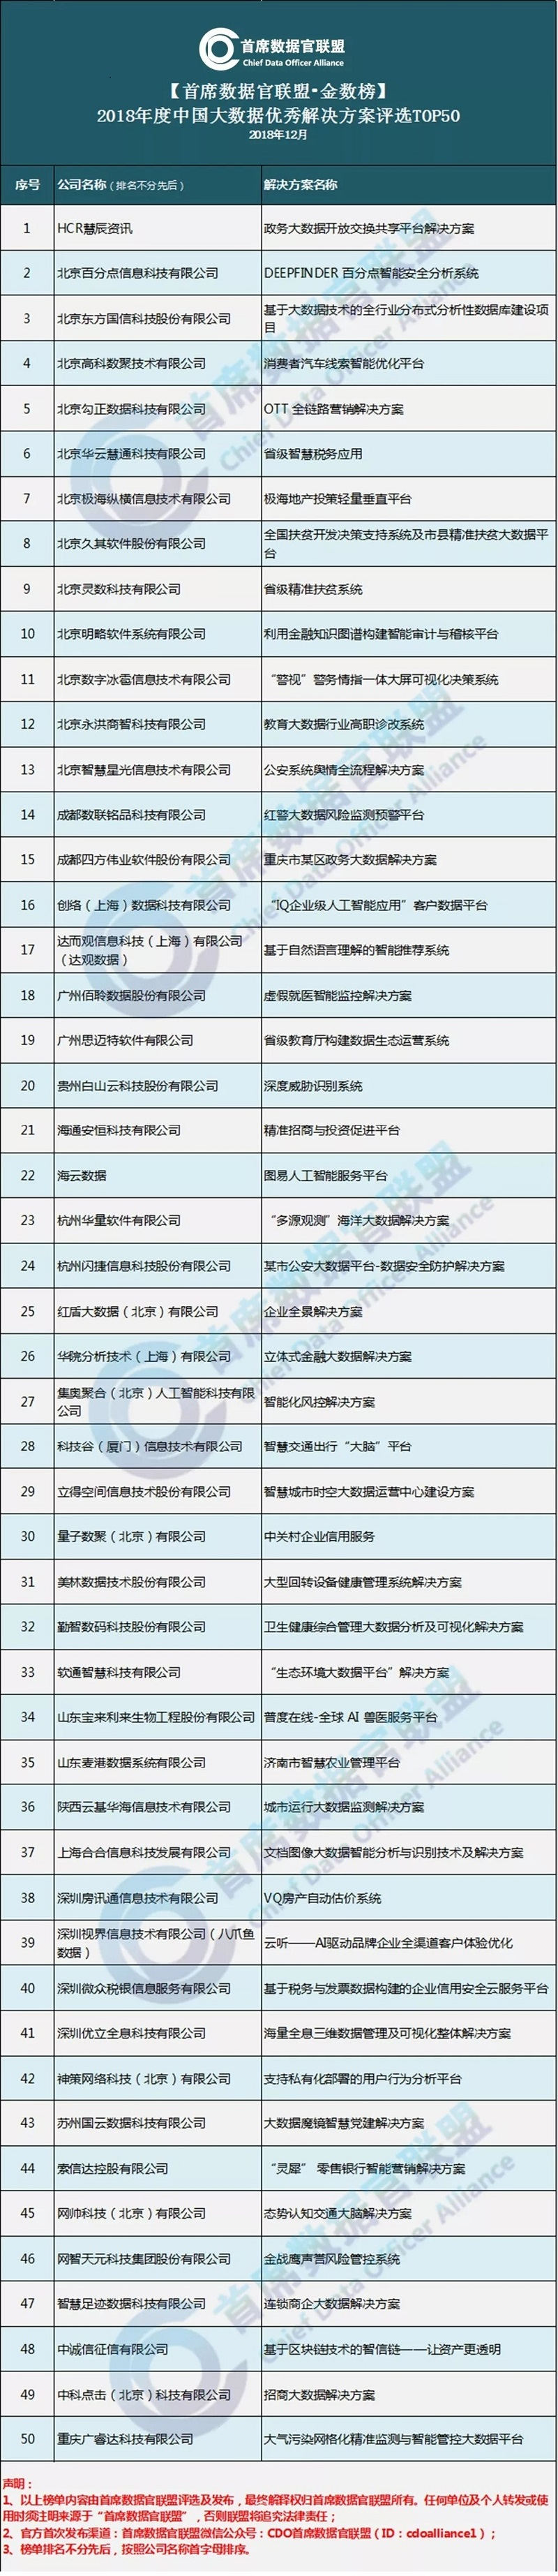 2018中国大数据优秀解决方案TOP50榜单